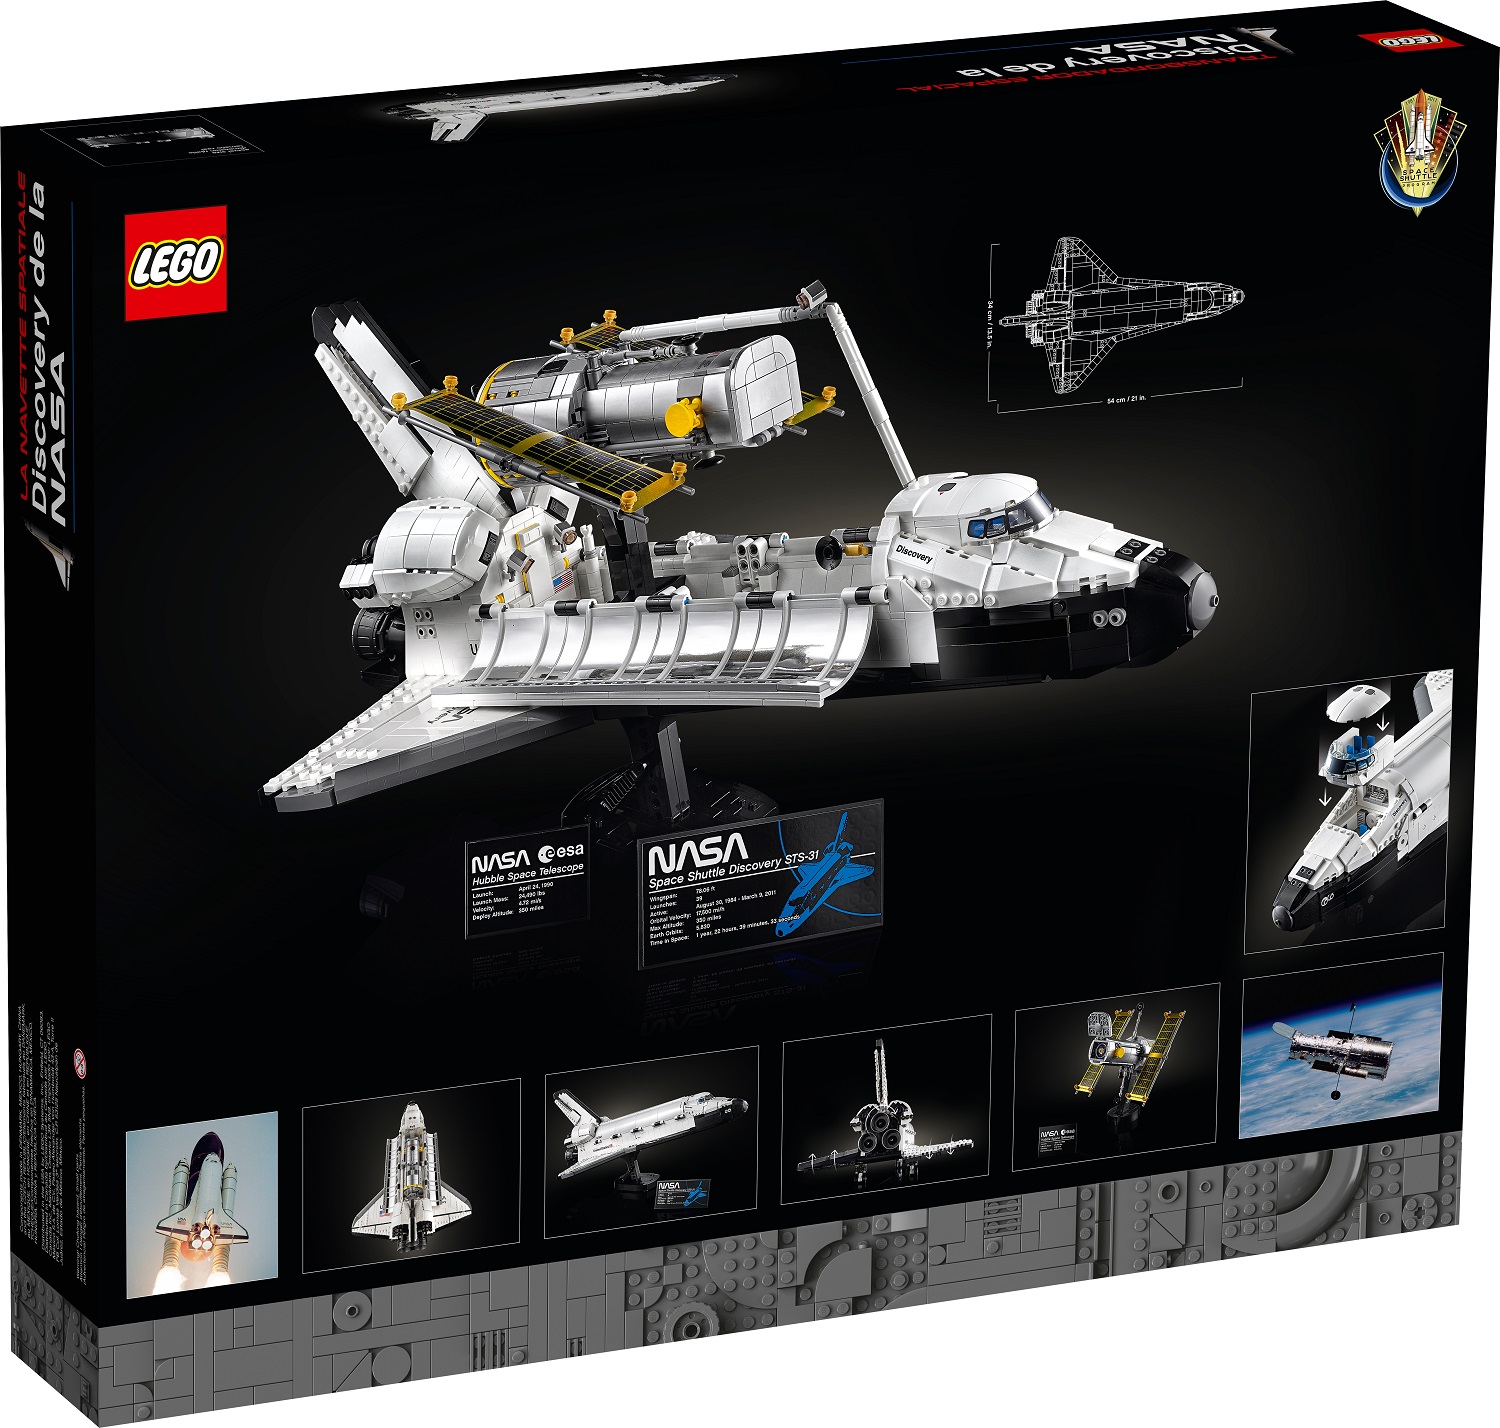 Az űrbe repít minket a LEGO 4